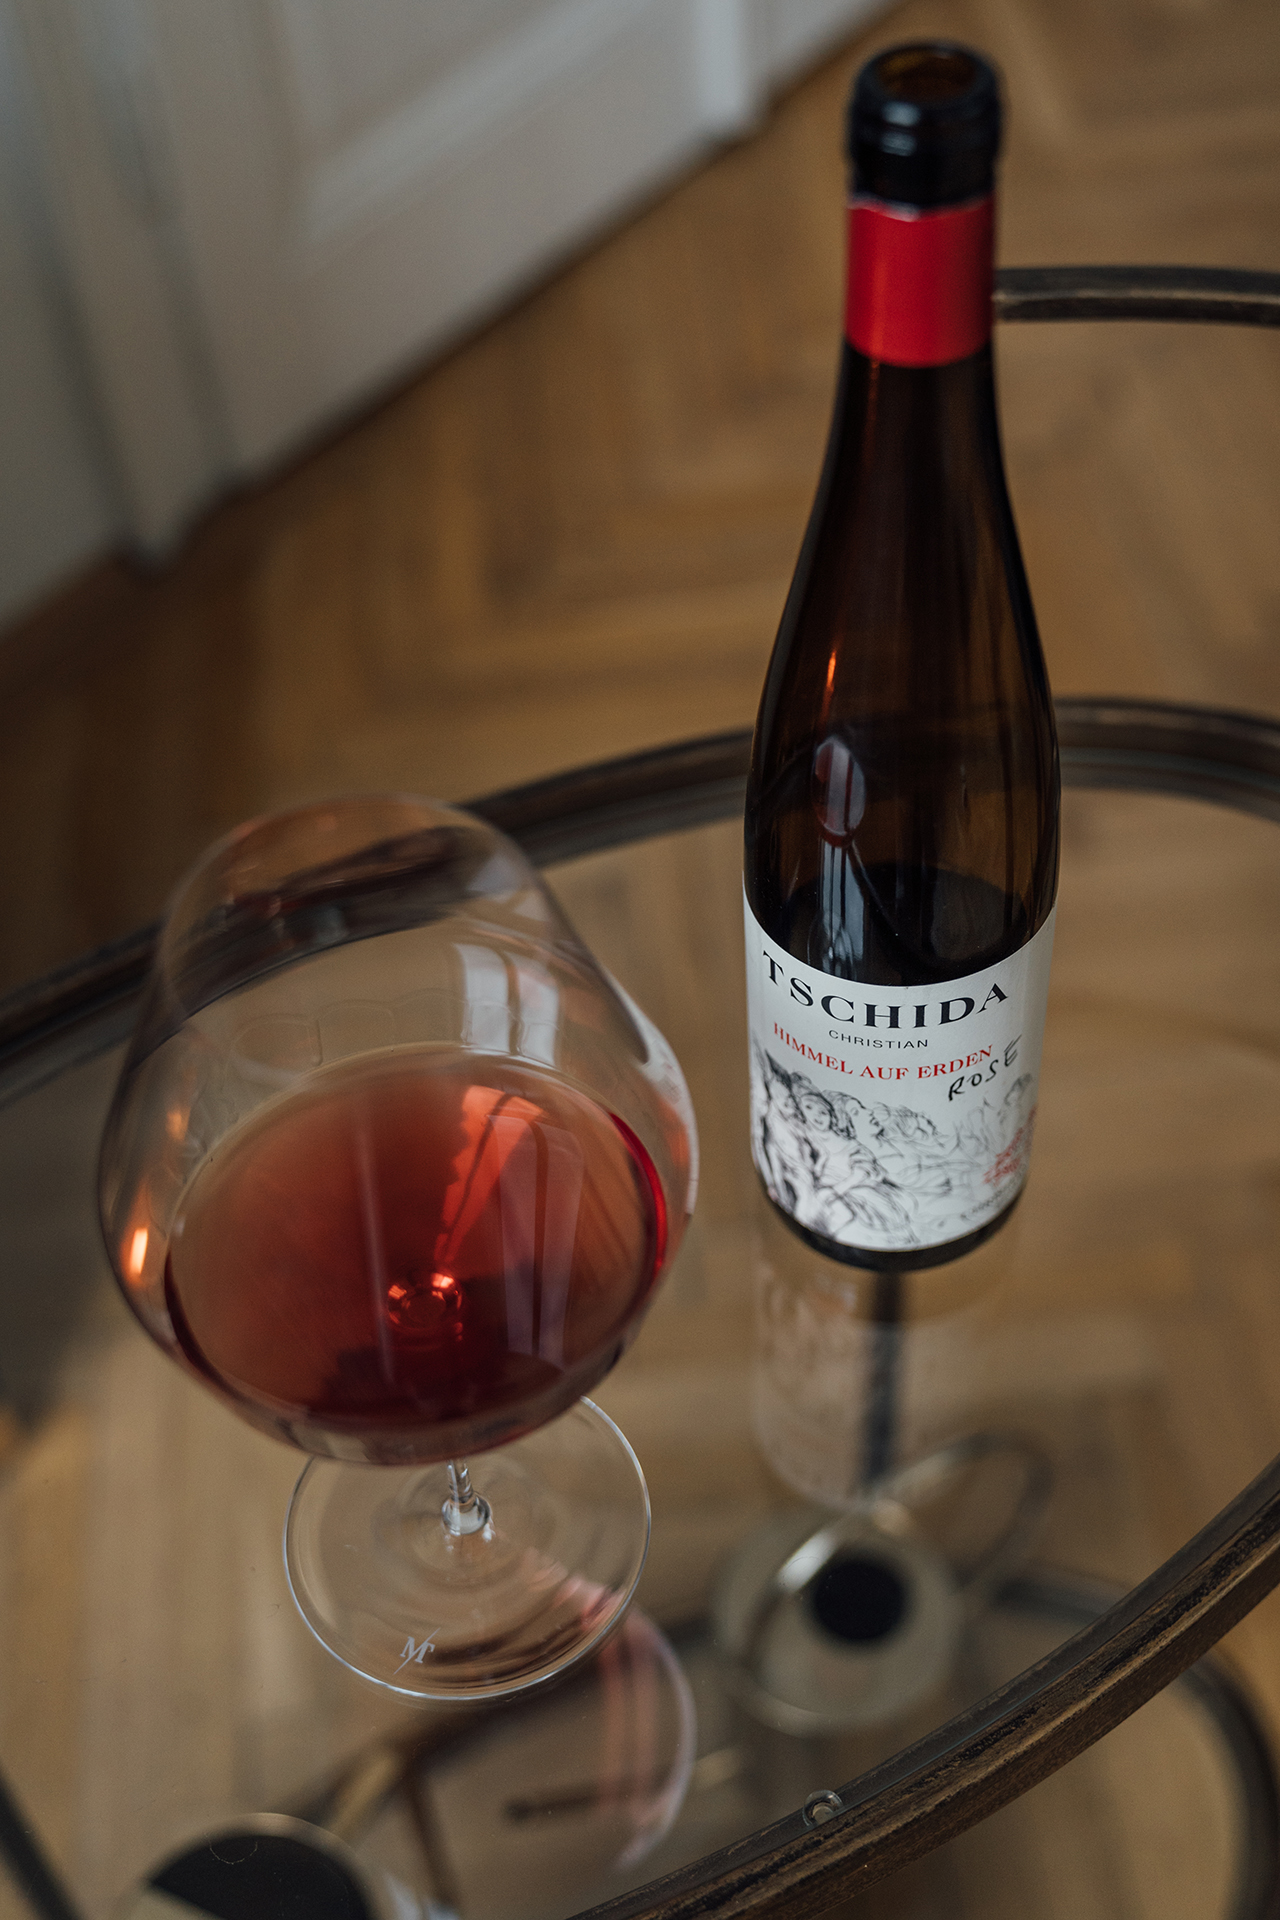 Ein Glas Himmel auf Erden Rosé von Christian Tschida, daneben die dazugehörige offene Flasche.